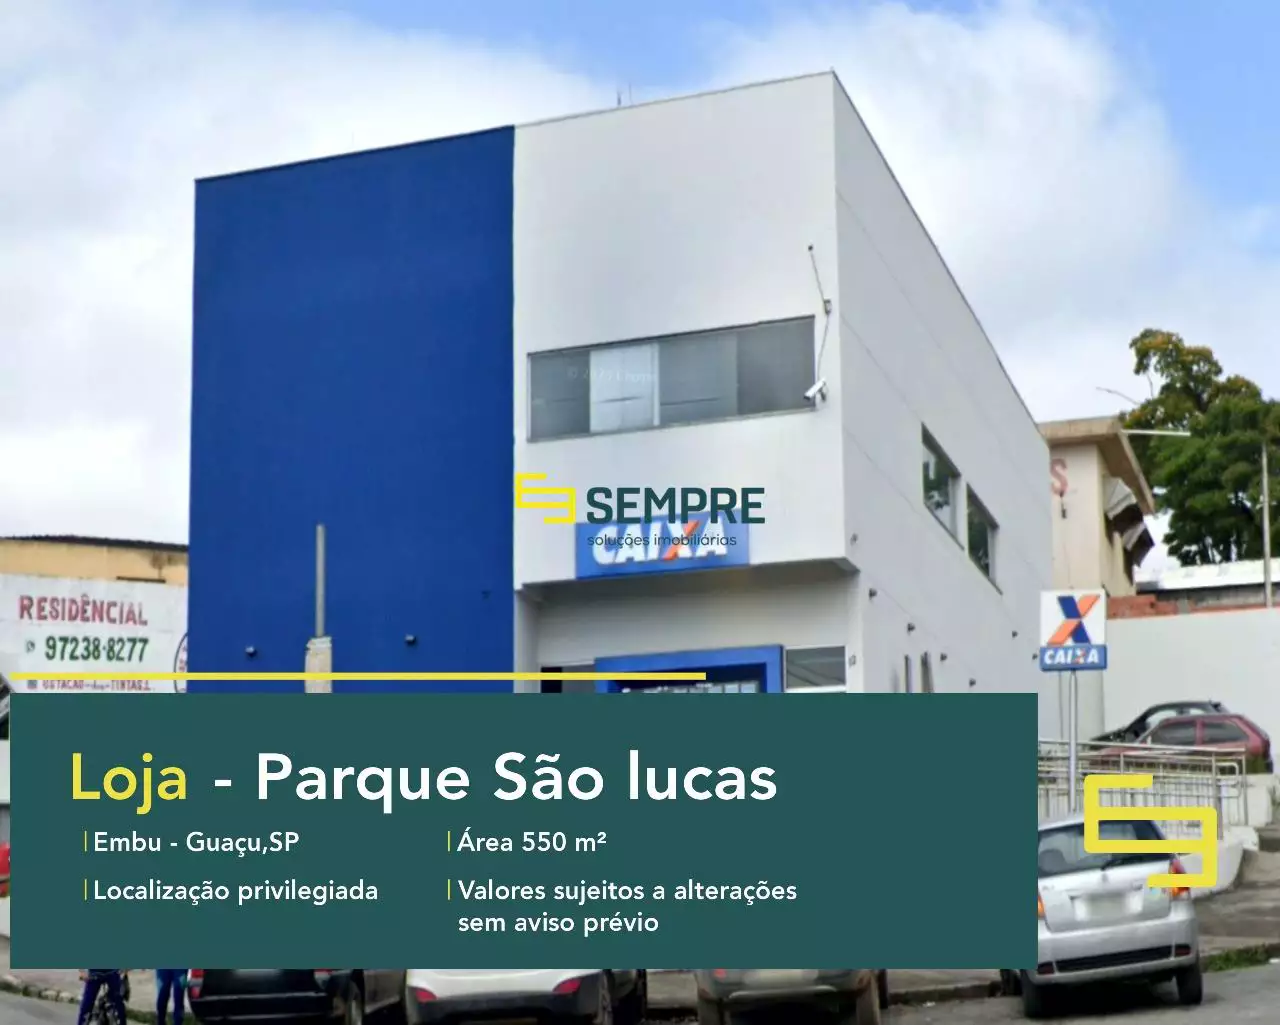 Loja para vender no Parque São Lucas em São Paulo, em excelente localização. O estabelecimento comercial conta com área de 550 m².